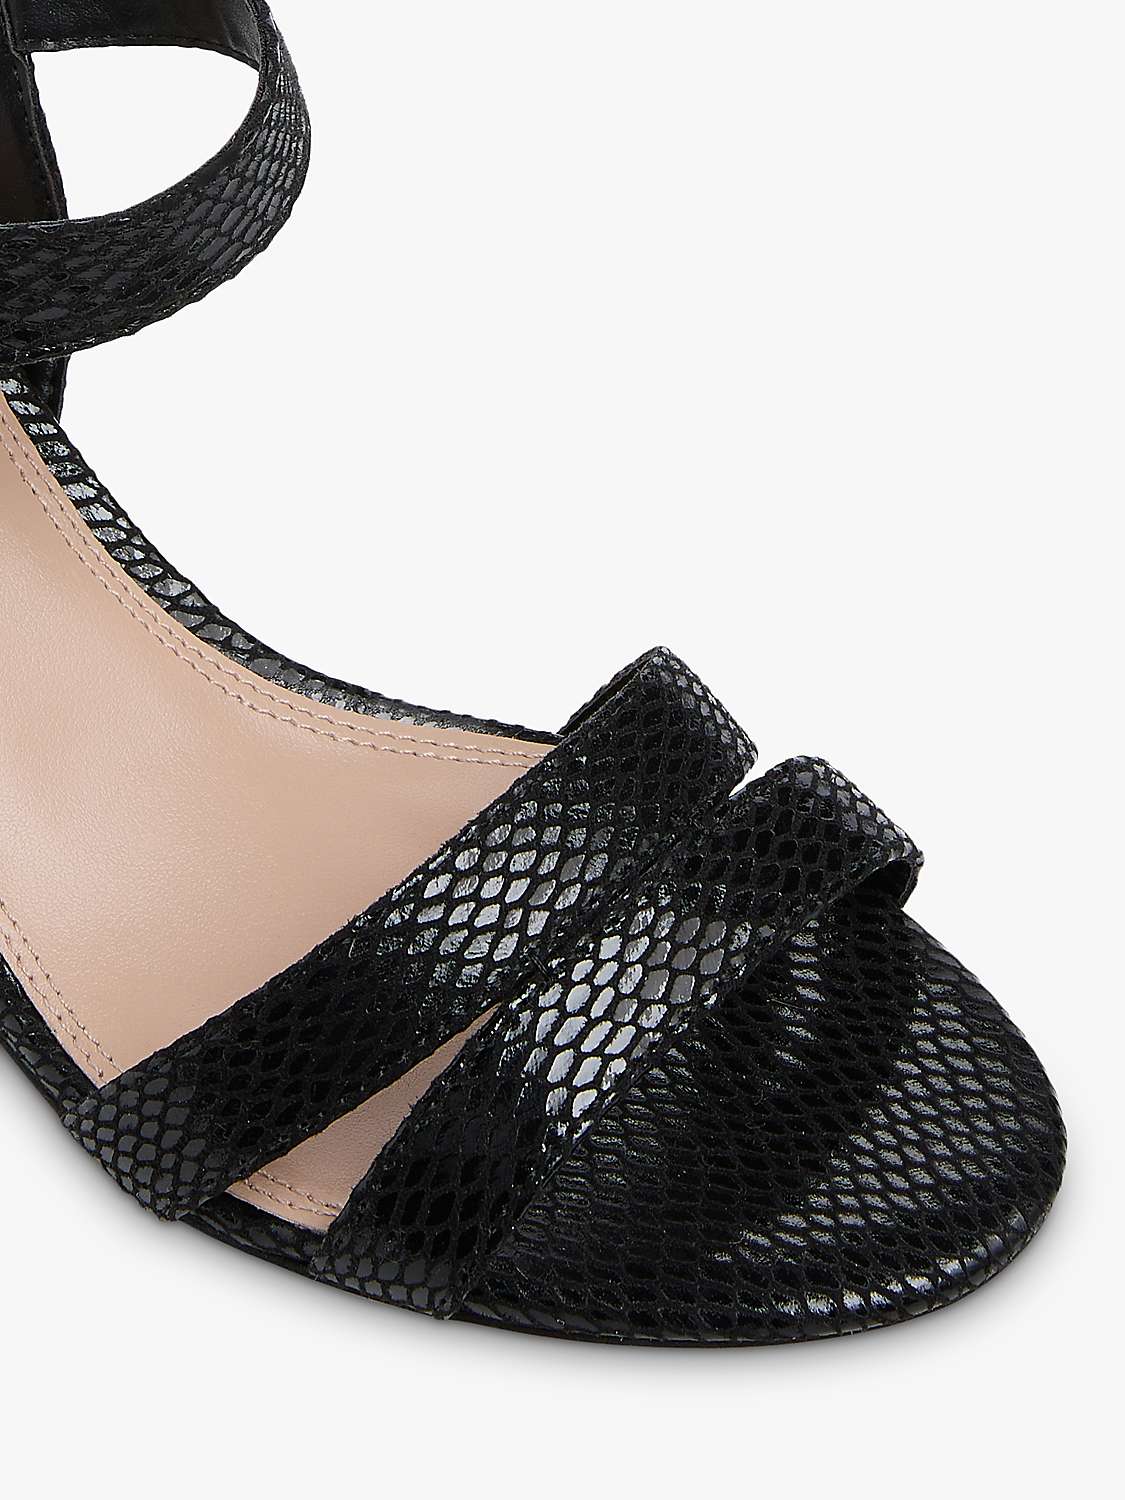 Buy Dune Wide Fit Merisa Croc Effect Block Heel Sandals Online at johnlewis.com